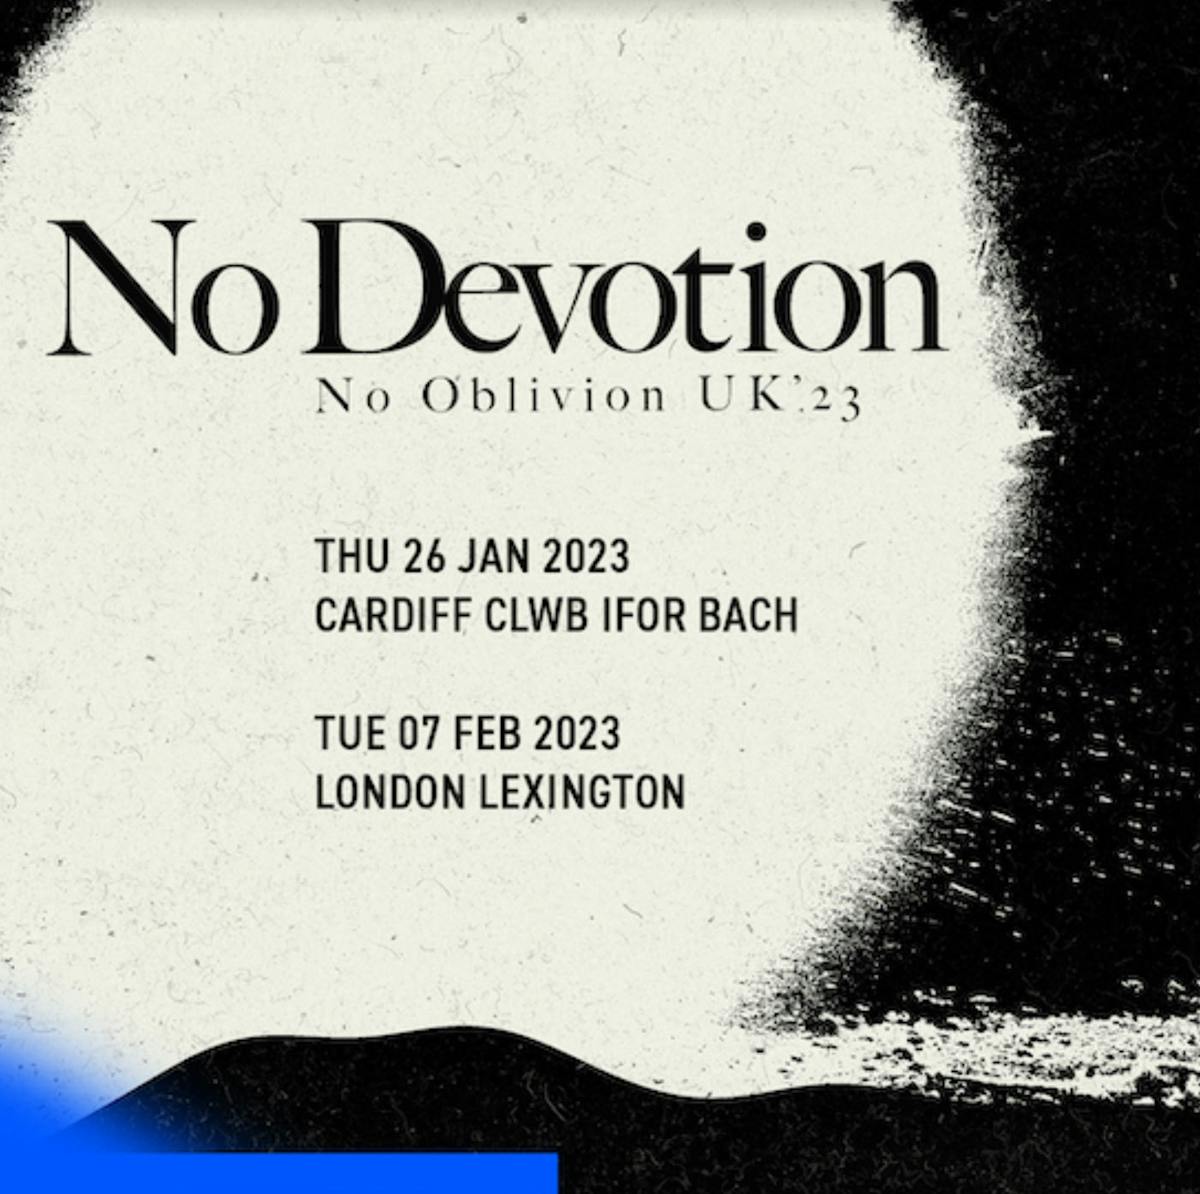 no devotion uk tour